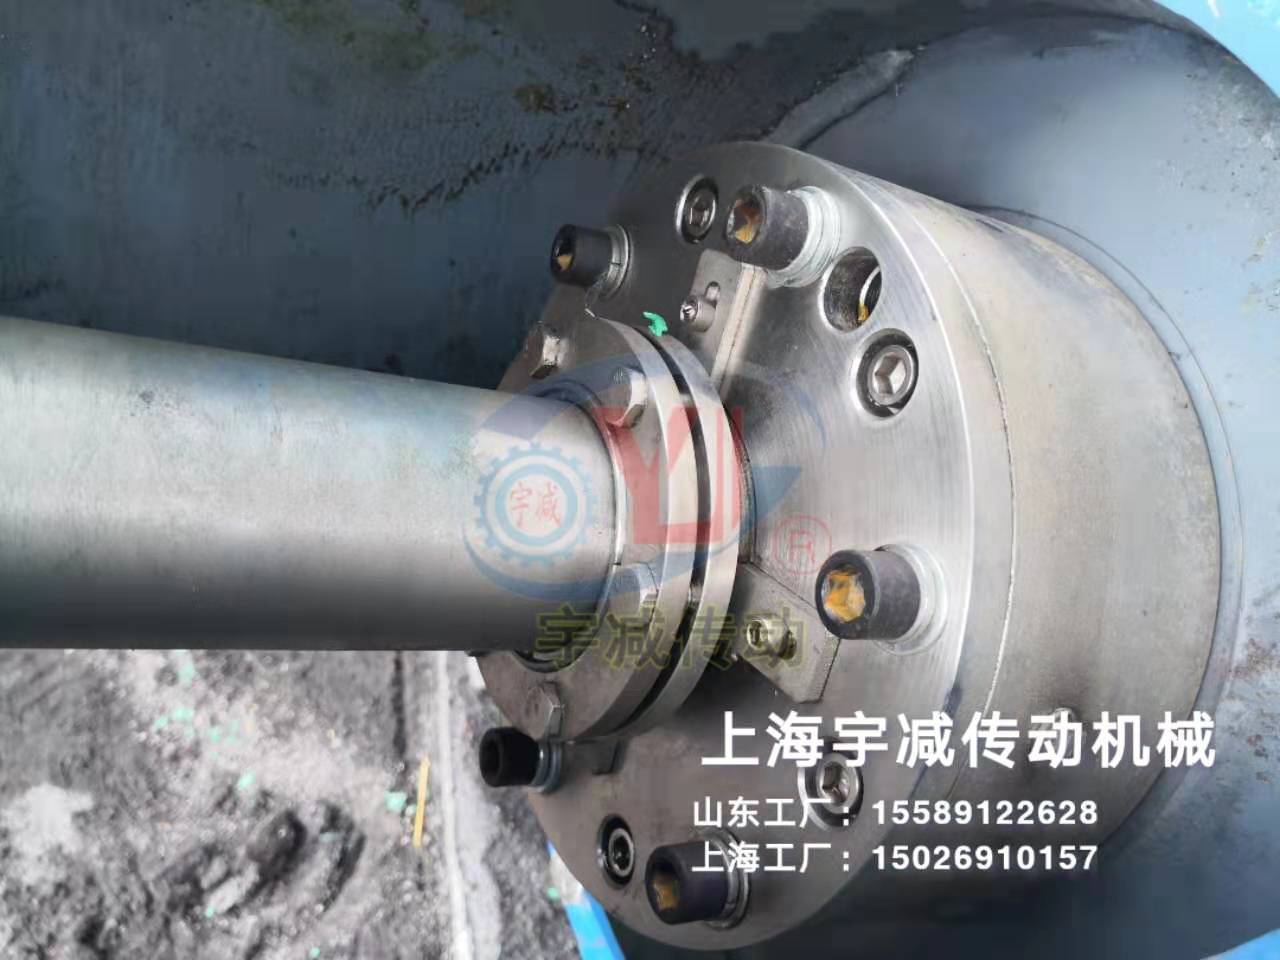 内蒙古热电项目脱硫塔侧入式搅拌器